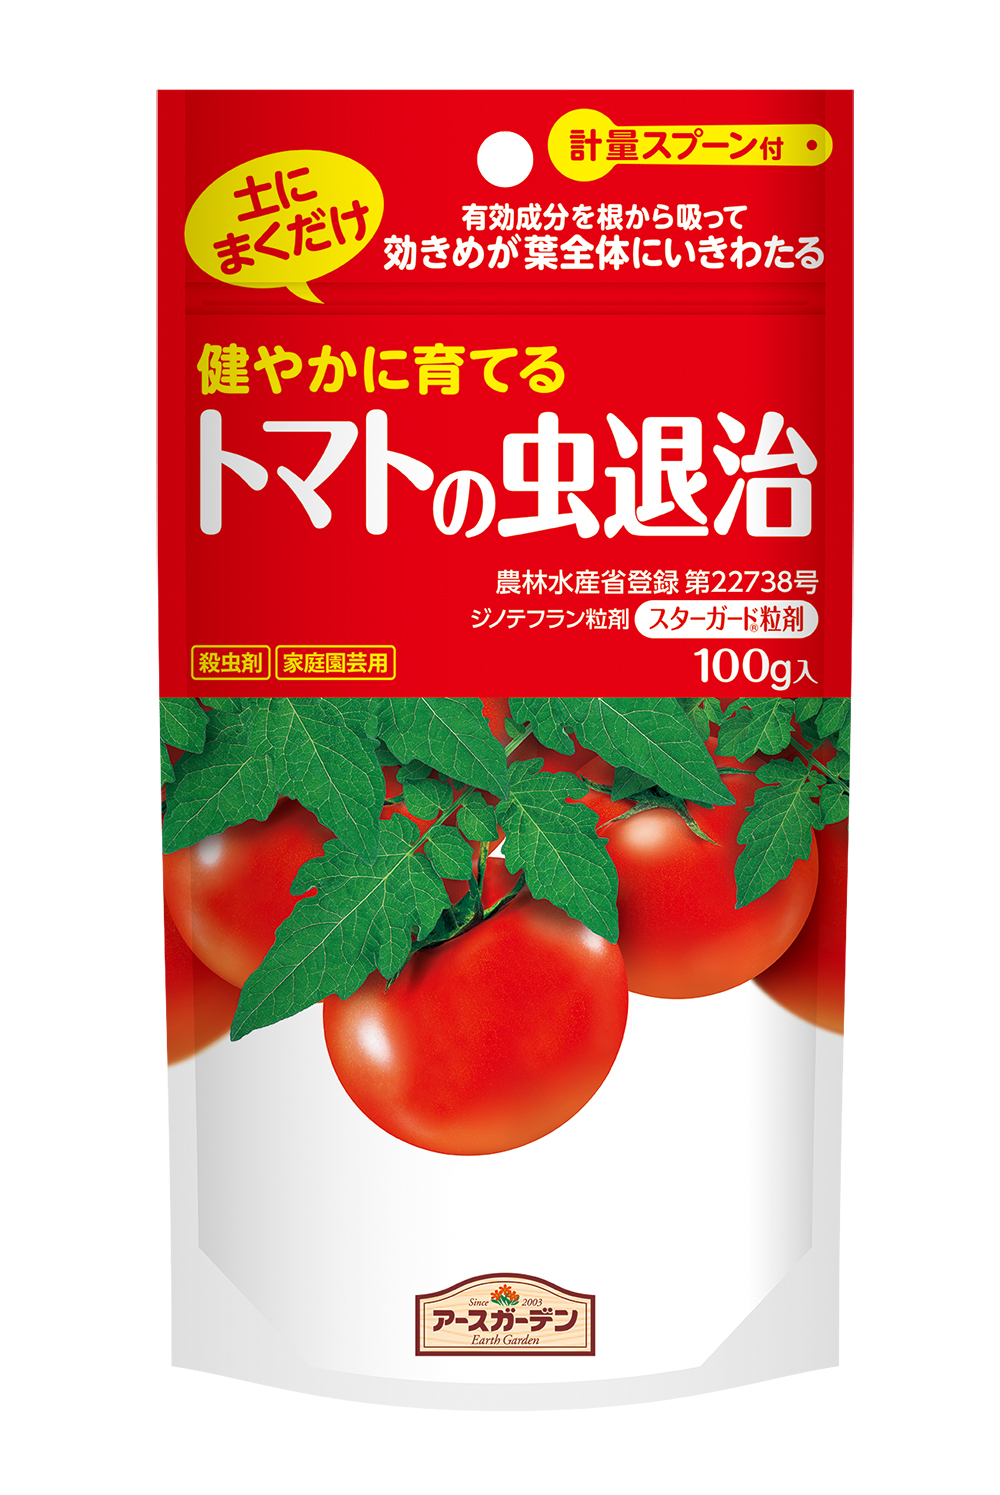 大人気のミニトマトにも使えます トマト ミニトマトの害虫のお悩み解決へ アース製薬株式会社のプレスリリース